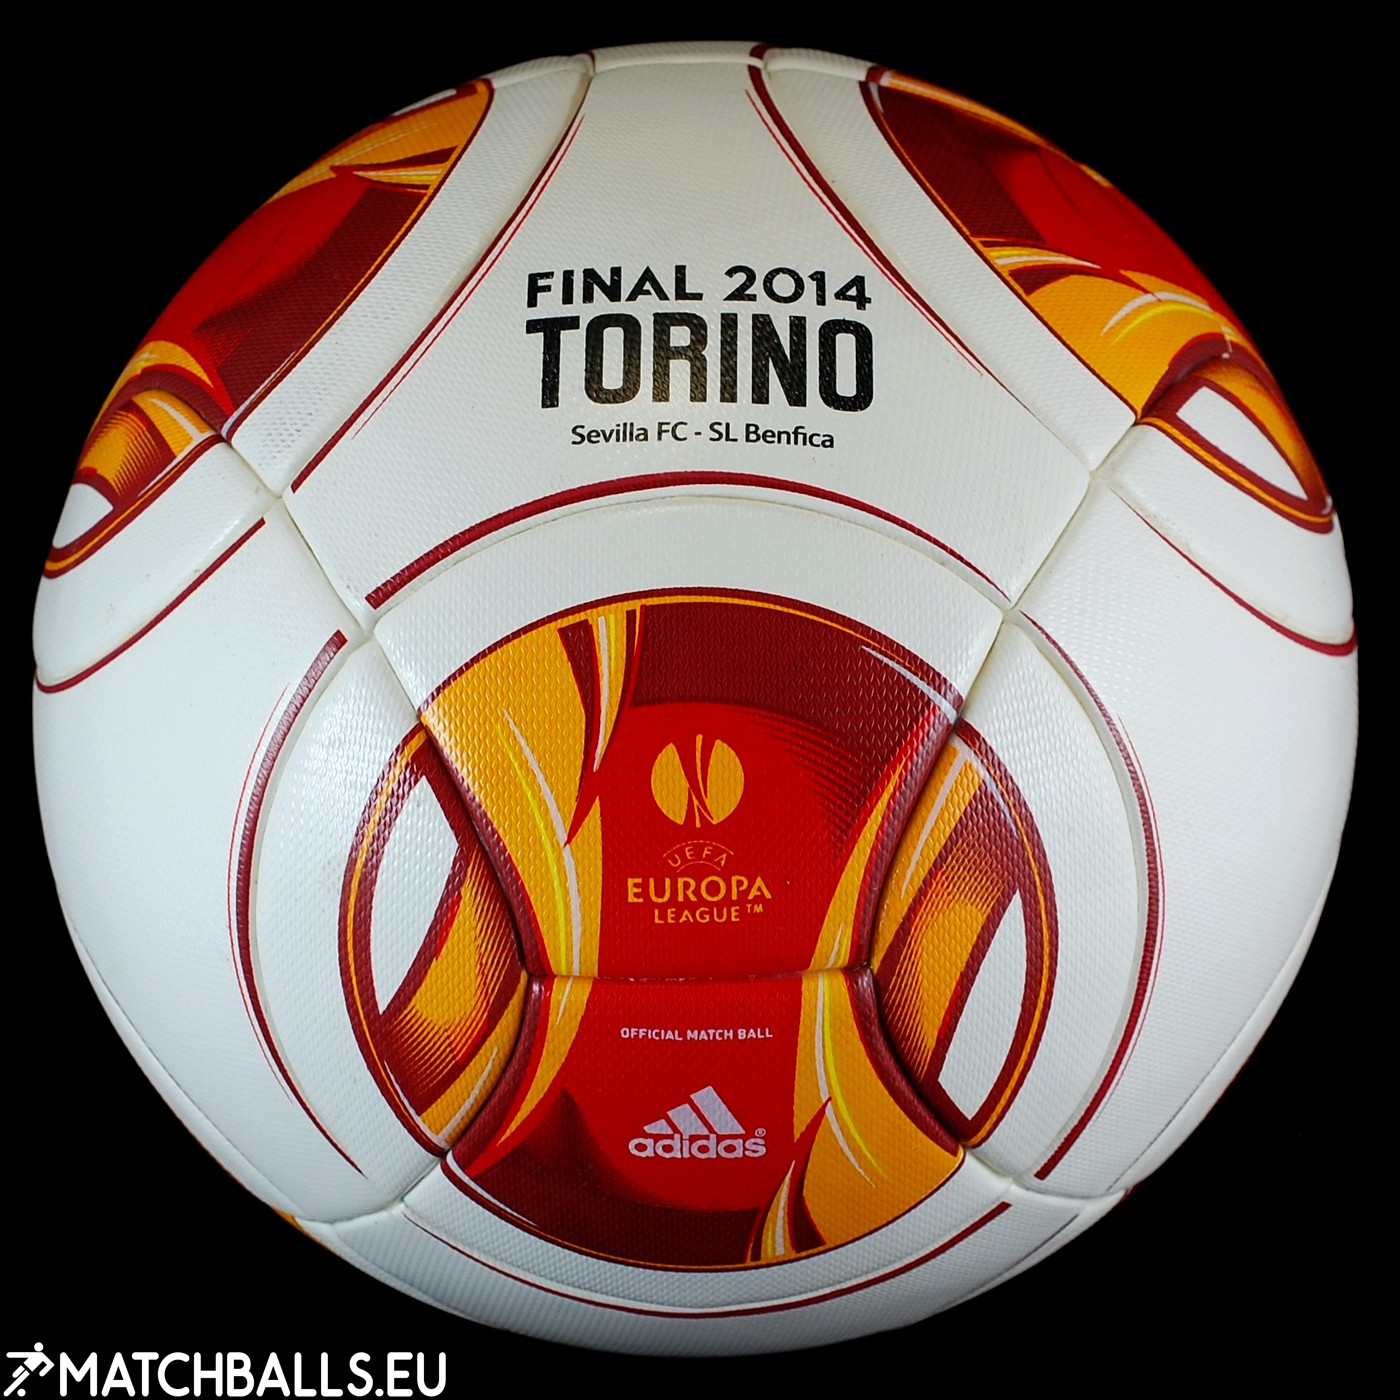 Adidas Torino 2014 Ball - Final Match (OMB) | matchballs.eu